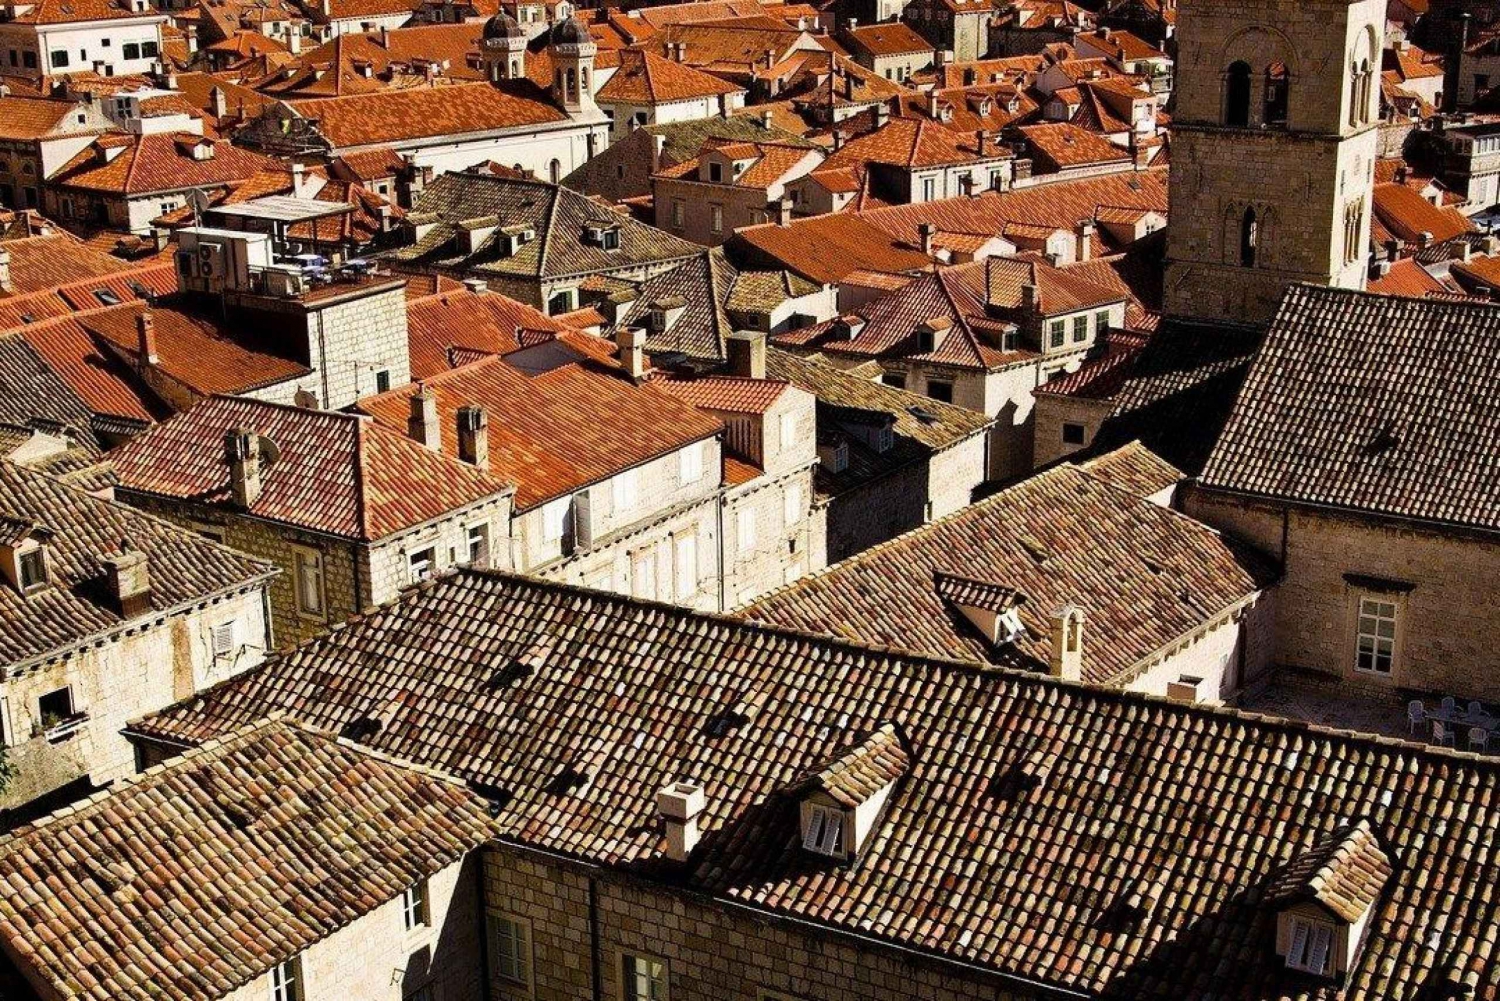 Franse Game of Thrones Tour: Ontdek de geheimen van Dubrovnik!